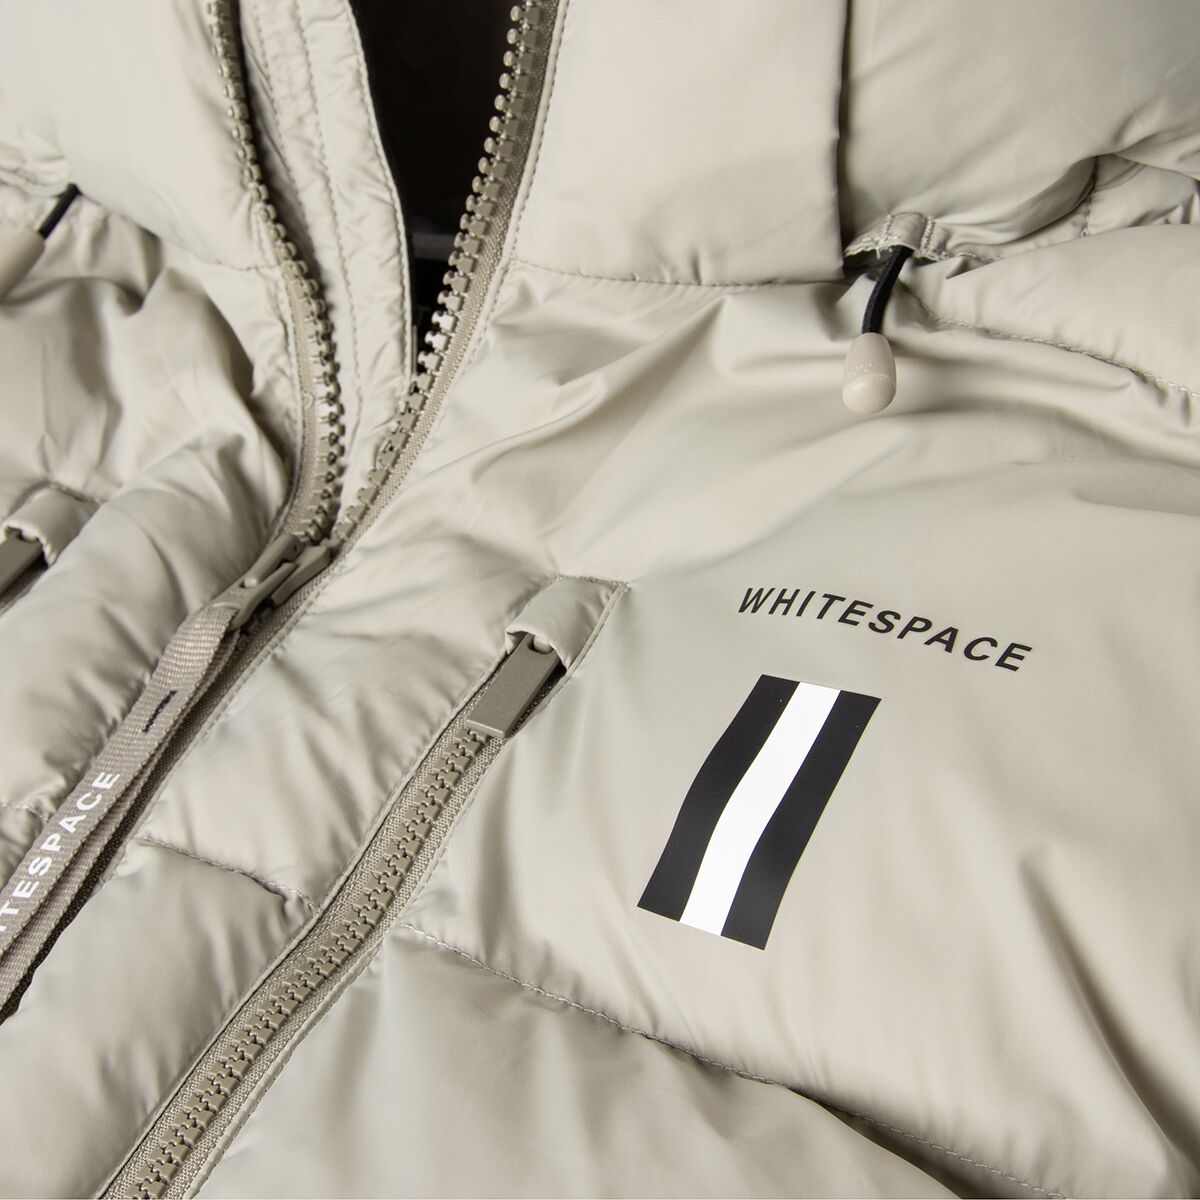 WHITESPACE SW Signature Puffy Jacket - Men's - Clothing